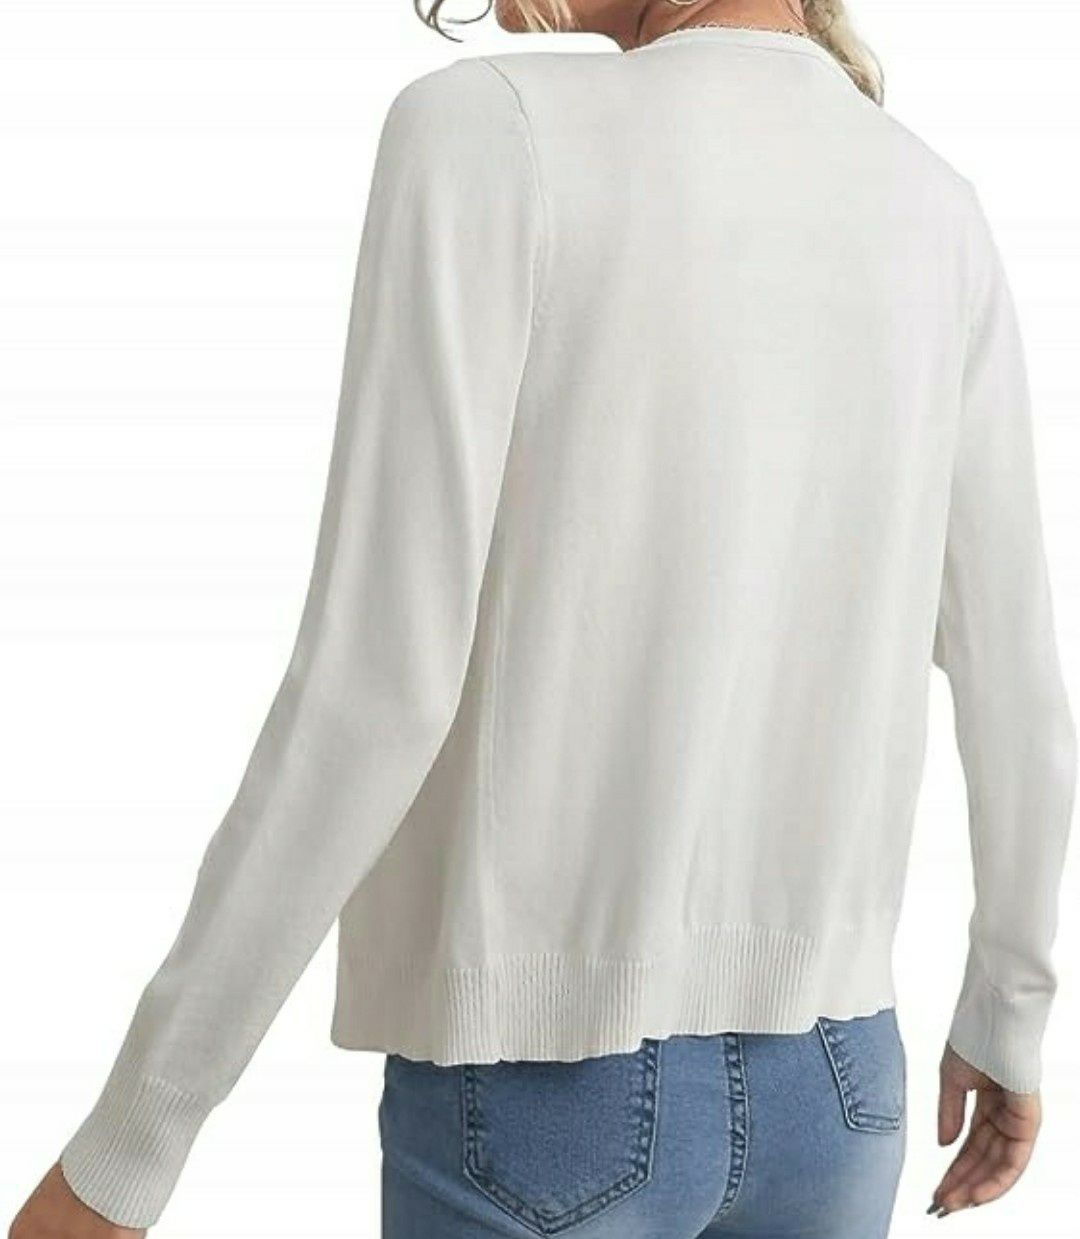 Sweter biały H&M rozpinany rozmiar 36